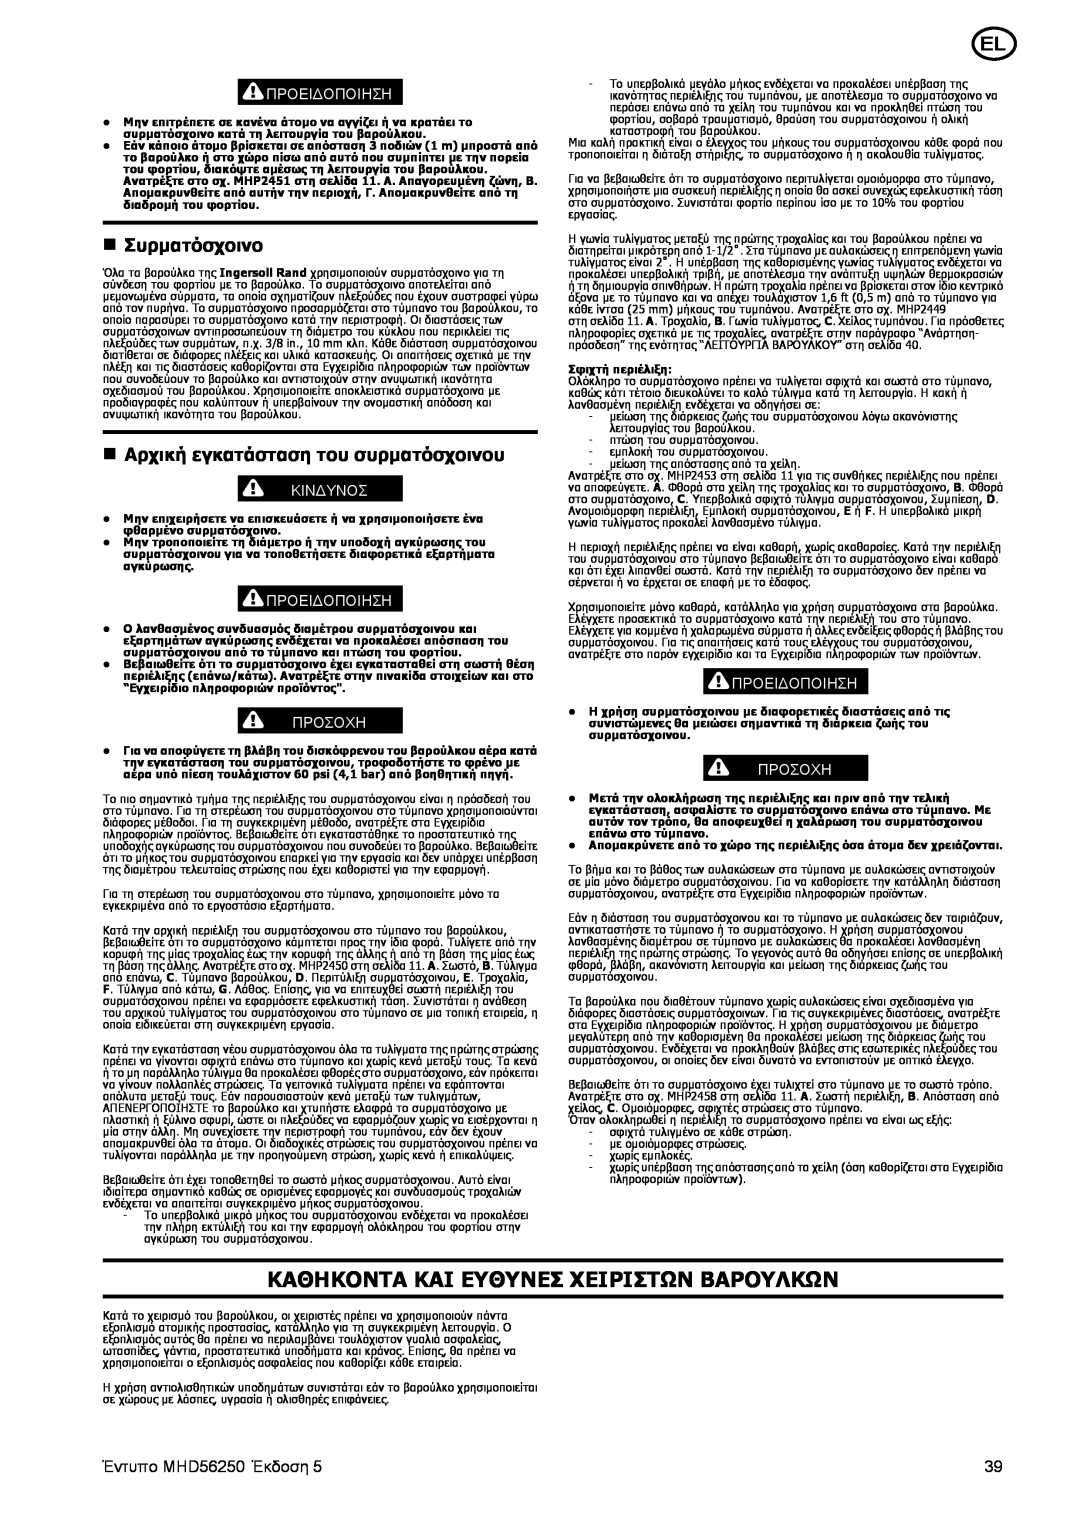 Ingersoll-Rand manual Καθηκοντα Και Ευθυνεσ Χειριστων Βαρουλκων, n Συρματόσχοινο, Έντυπο MHD56250 Έκδοση, Προειδοποιηση 